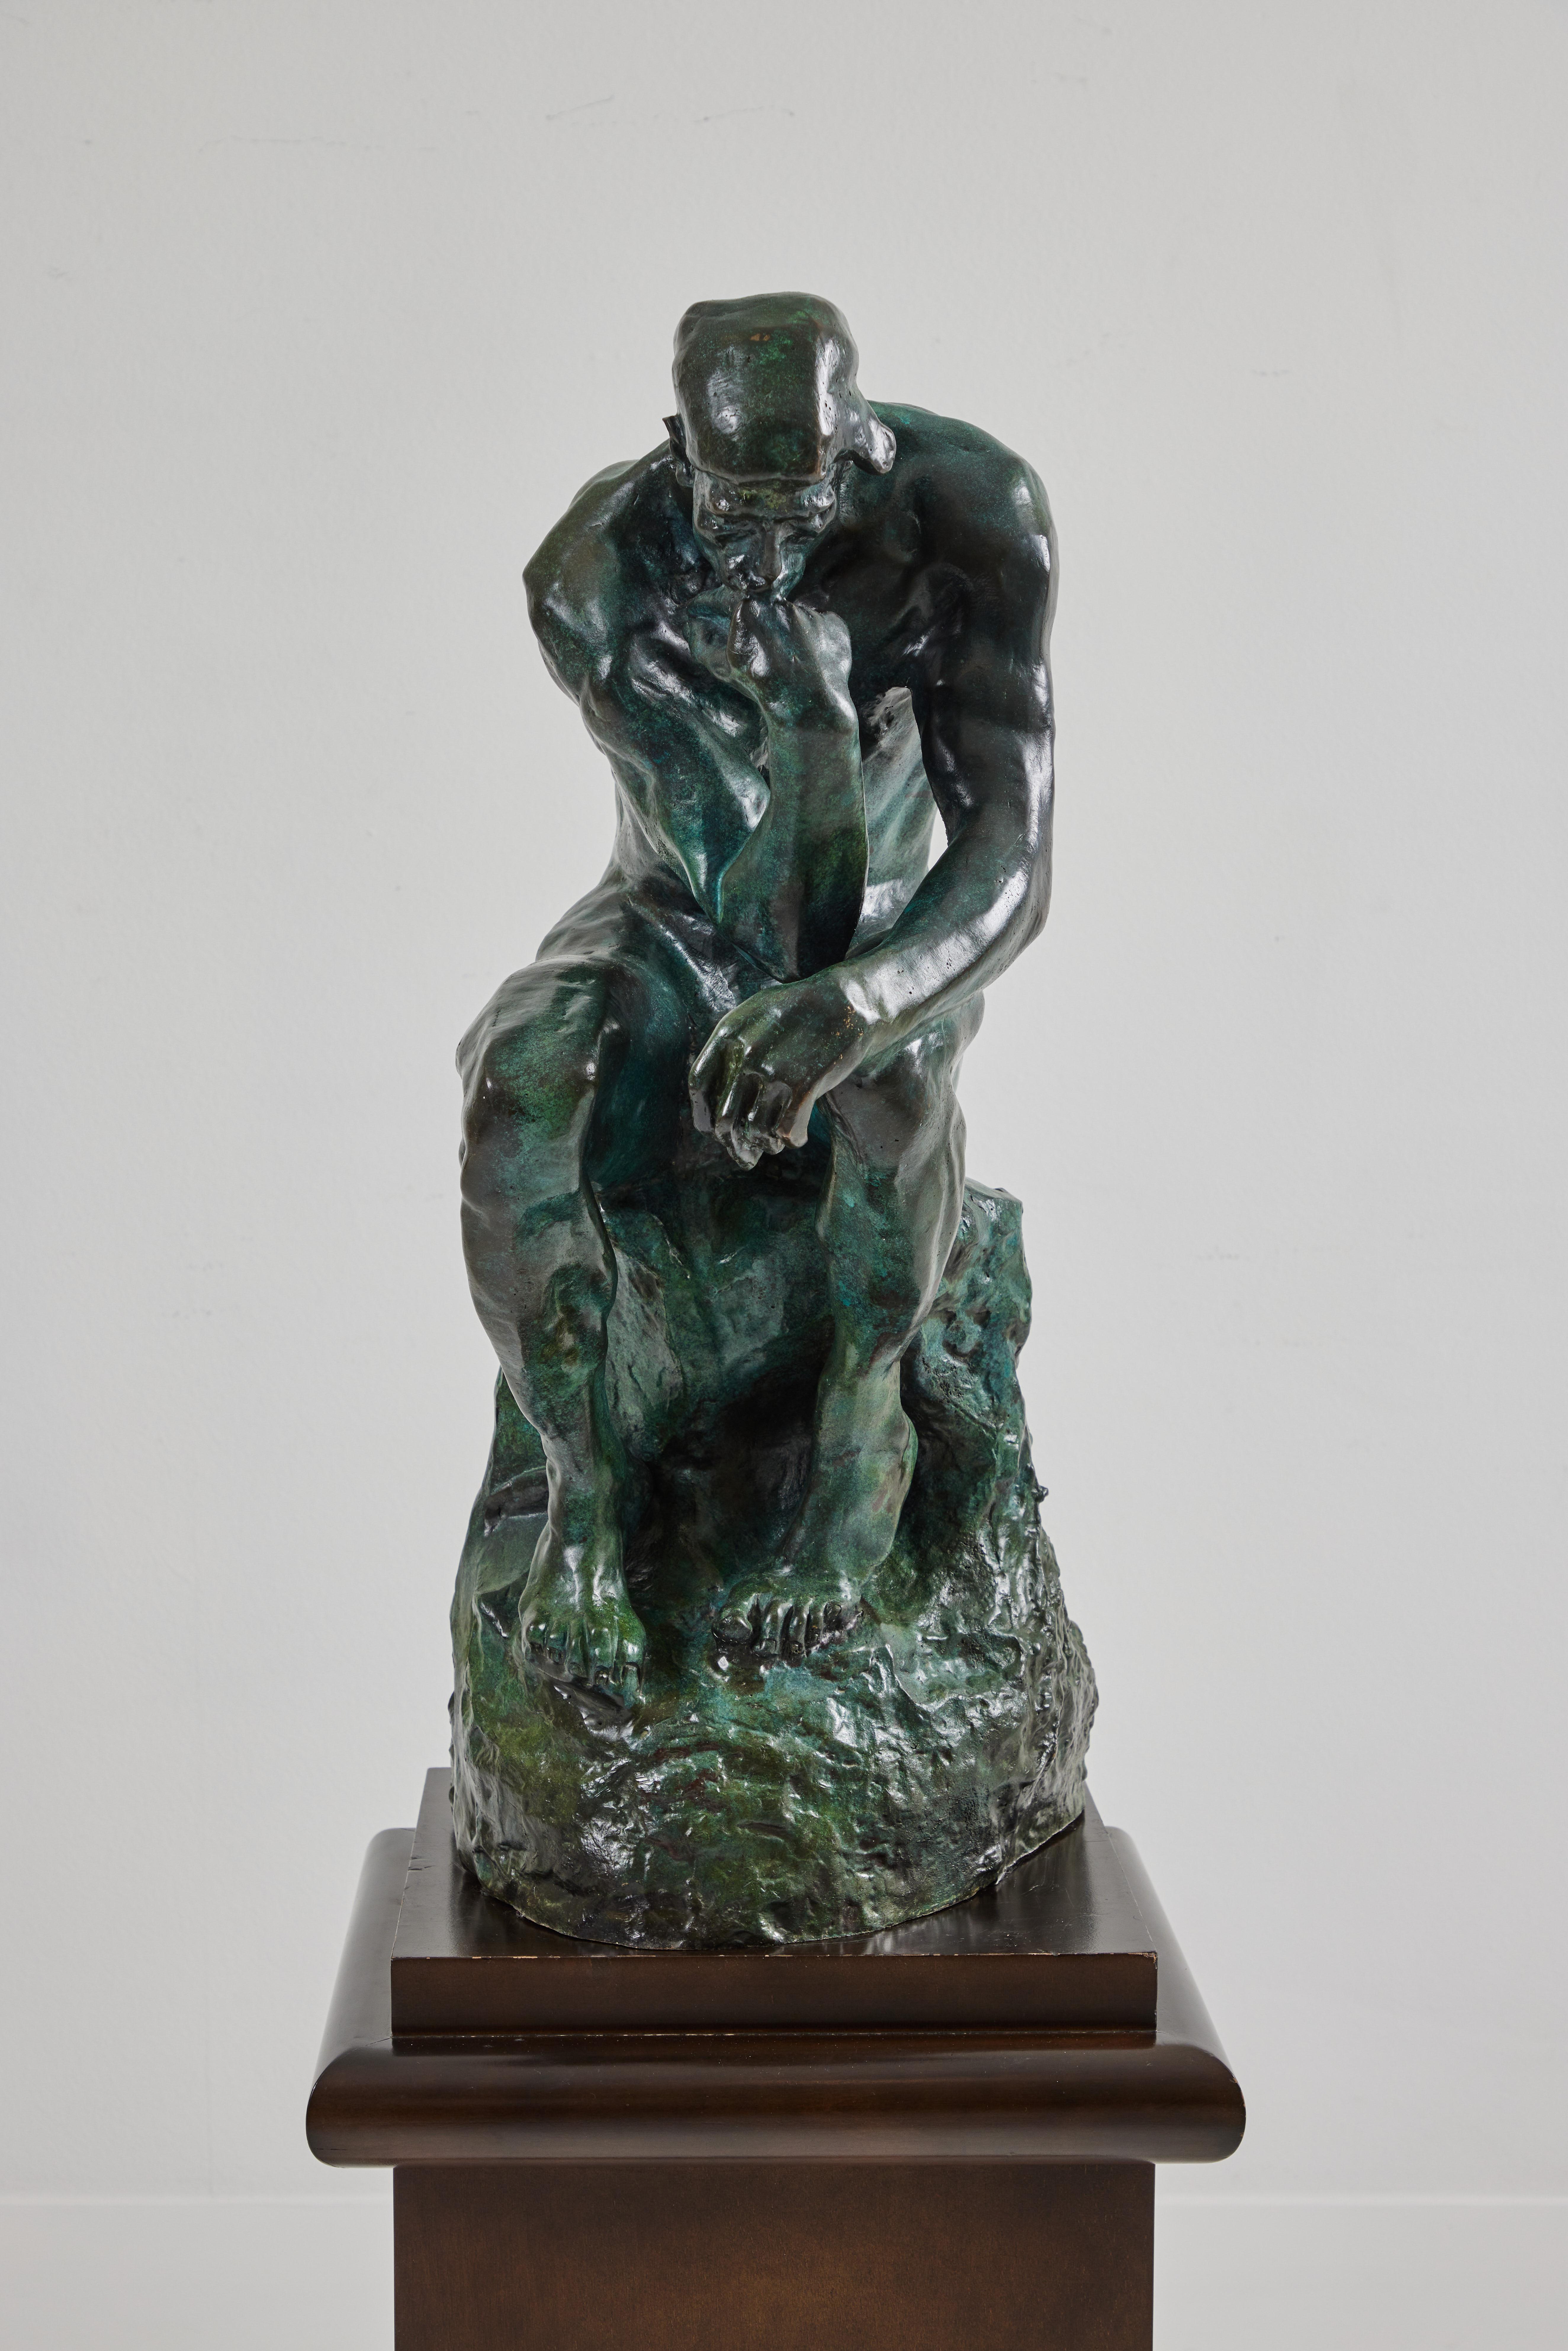 Il s'agit d'une impressionnante sculpture en bronze de 29 pouces de haut représentant Le Penseur de Rodin. Il est magnifiquement rendu de la même manière que l'original dont il s'inspire. Il semble s'agir d'une édition de 10 exemplaires et la base